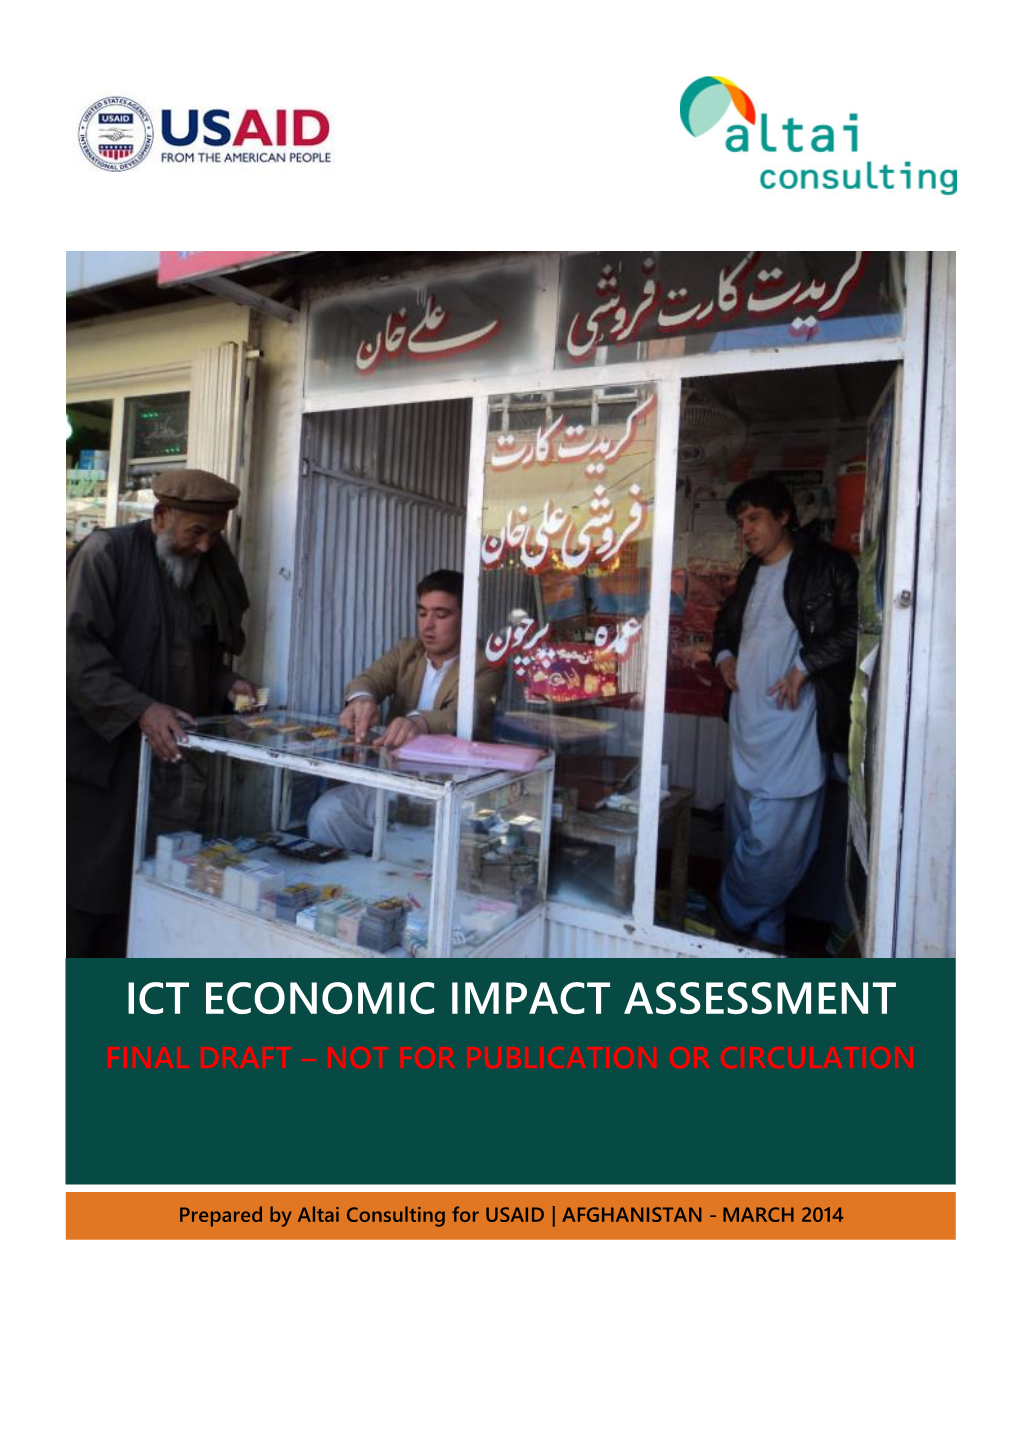 ICT Economic Impact Study